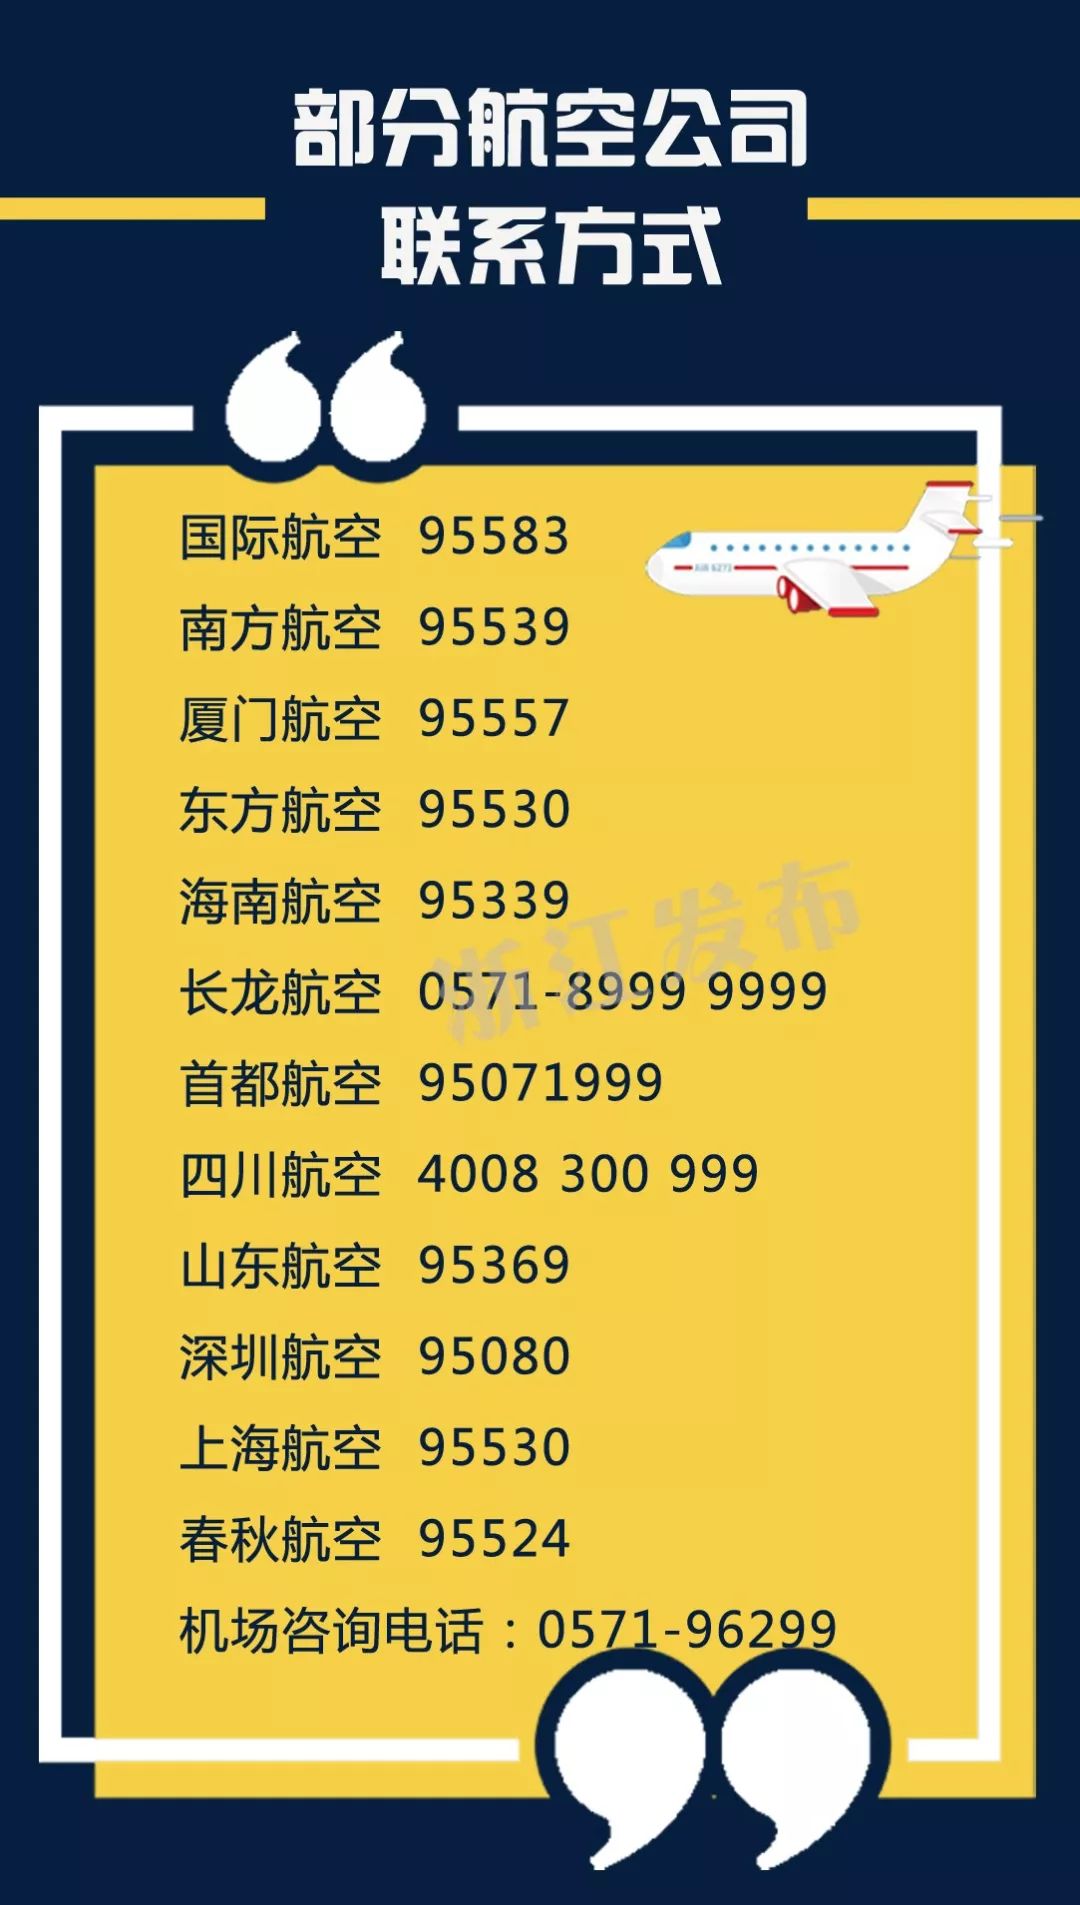 今天铁路杭州站,萧山机场多趟列车(航班)停运或取消